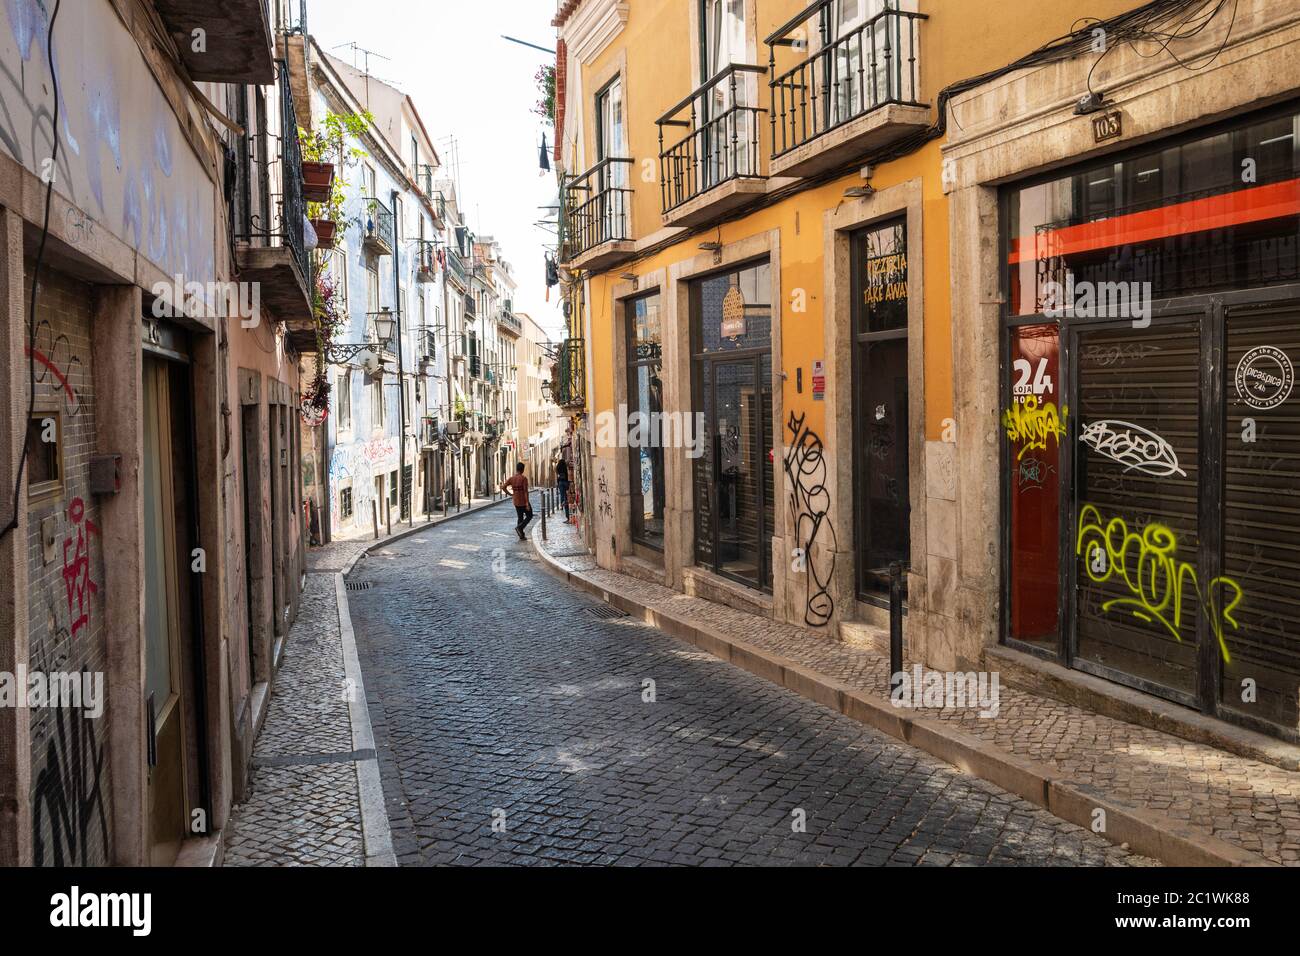 Das Viertel Bairro Alto in Lissabon hat eine farbenfrohe und mit Graffiti bemalte façades mit Bars, Restaurants und Geschäften. Lissabon, Portugal. Stockfoto